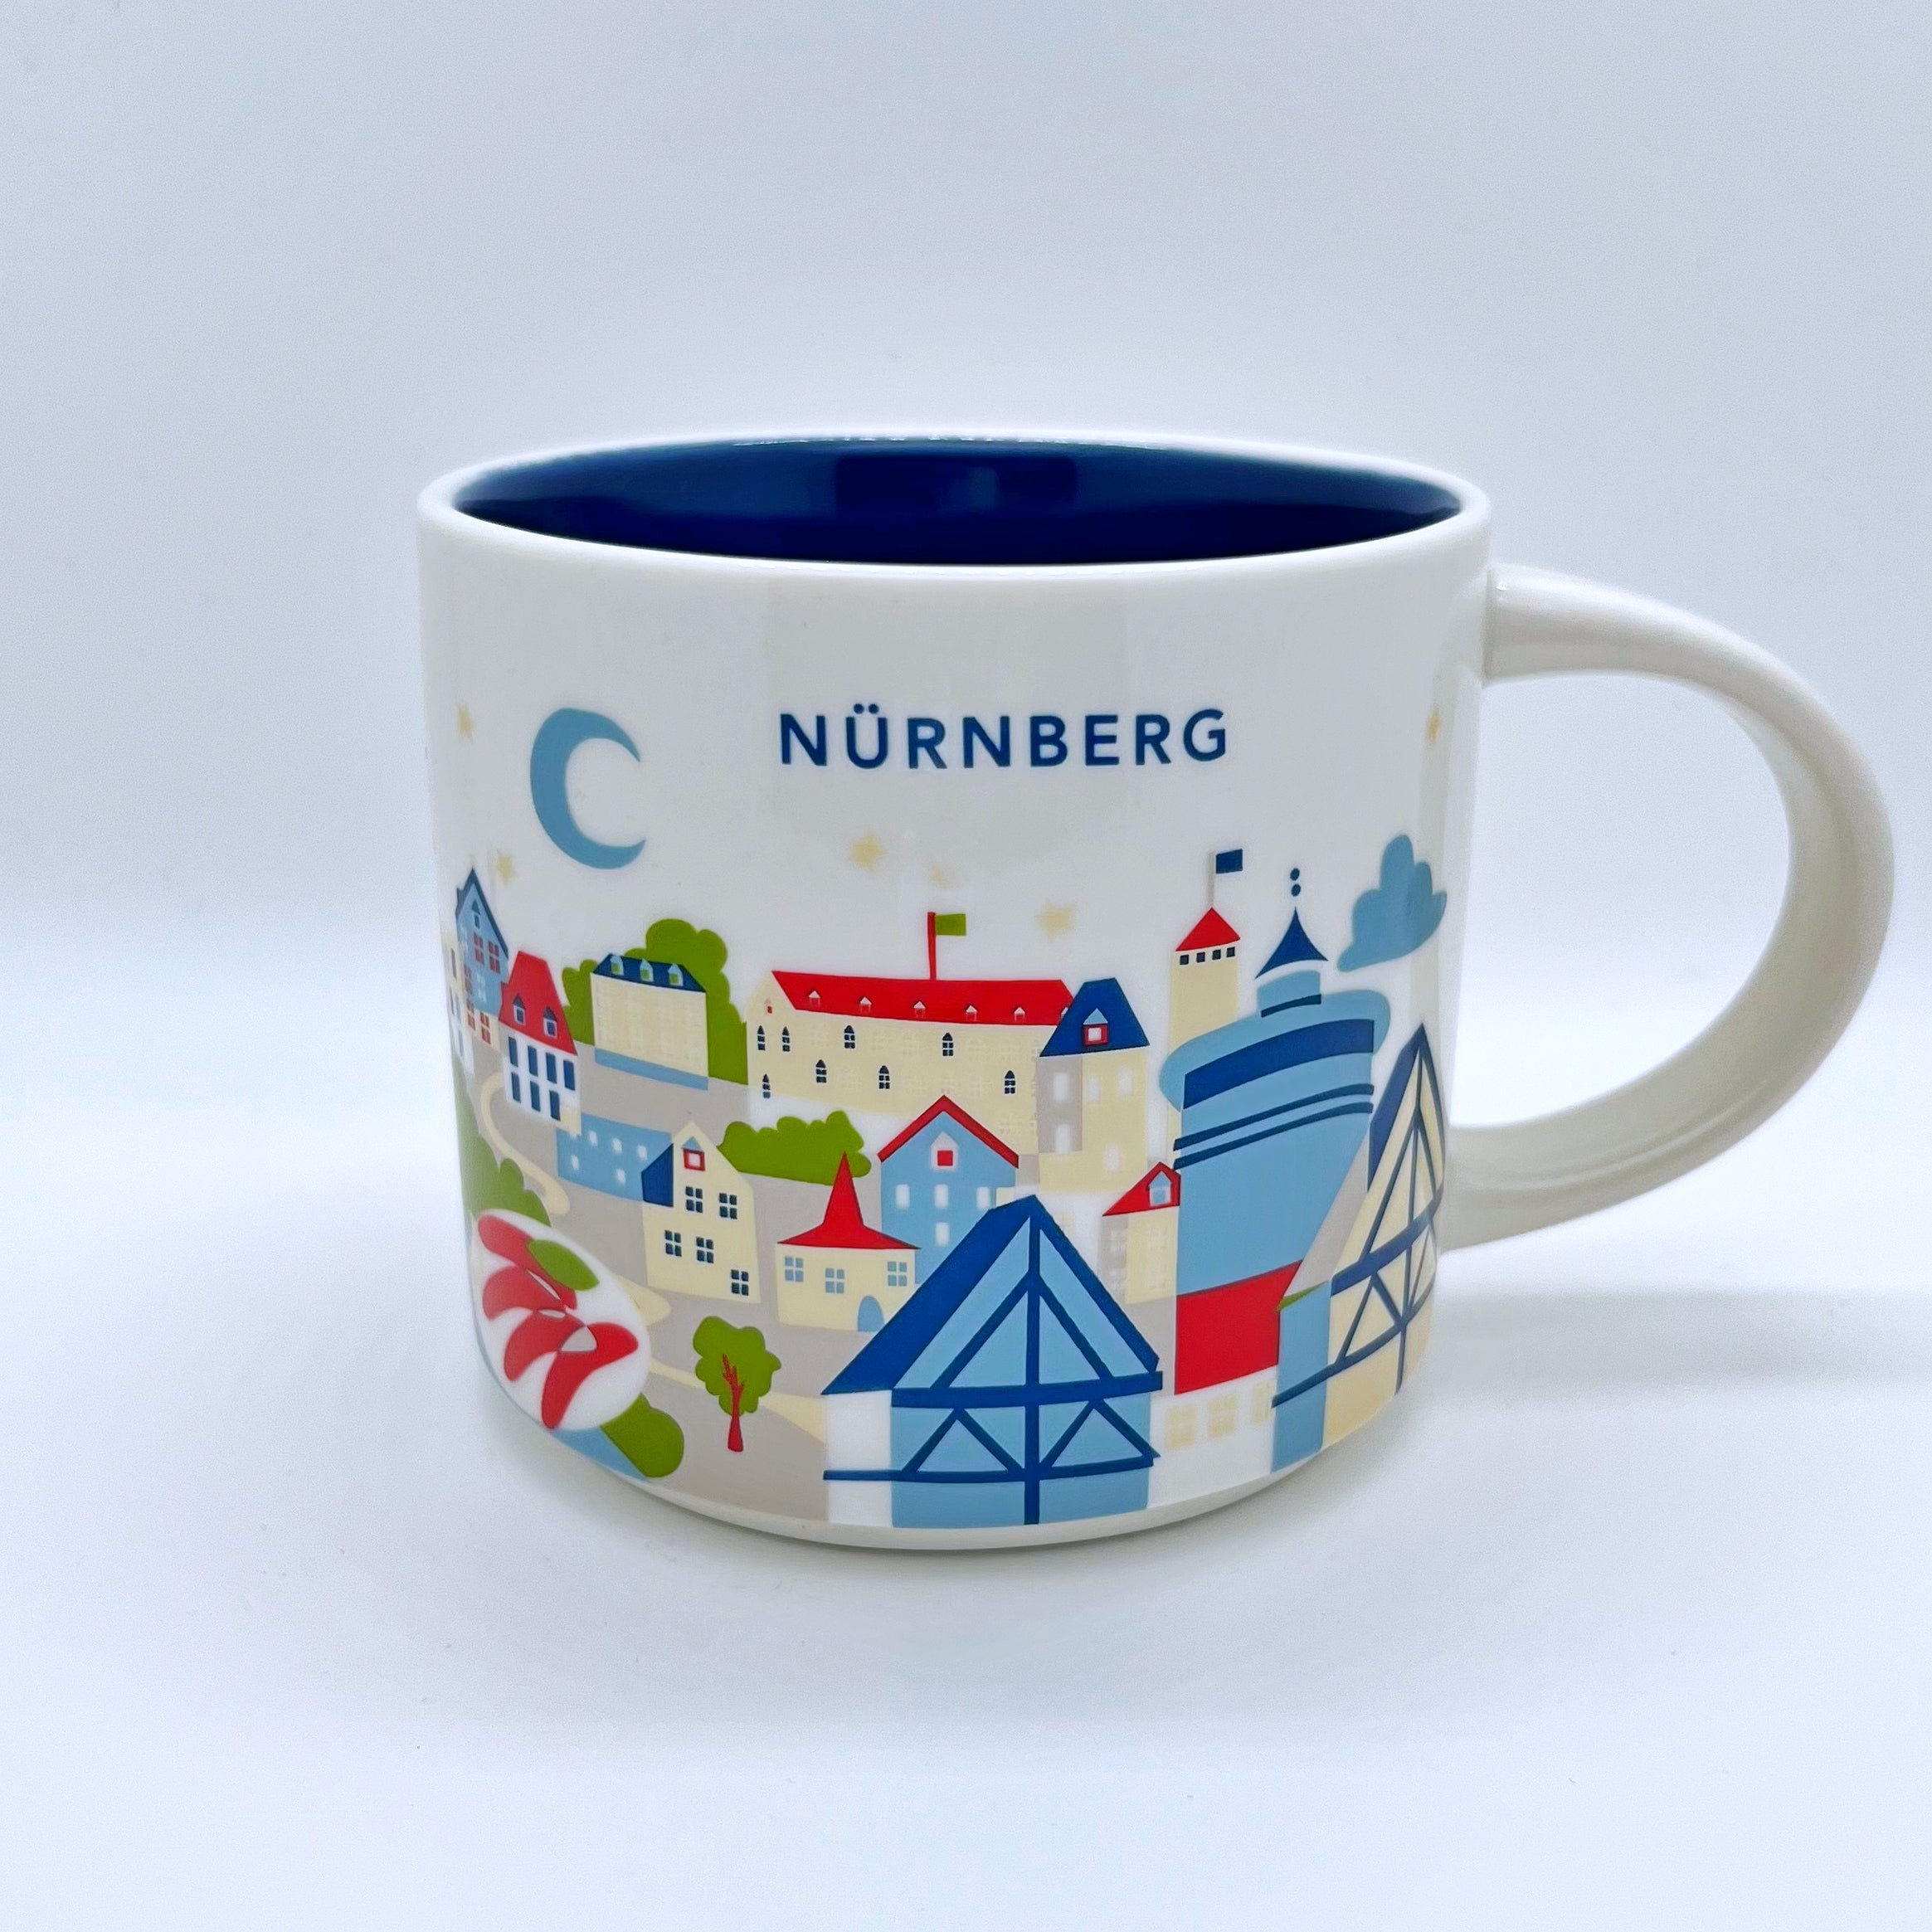 Kaffee Cappuccino oder Tee Tasse von Starbucks mit gemalten Bildern aus der Stadt Nürnberg